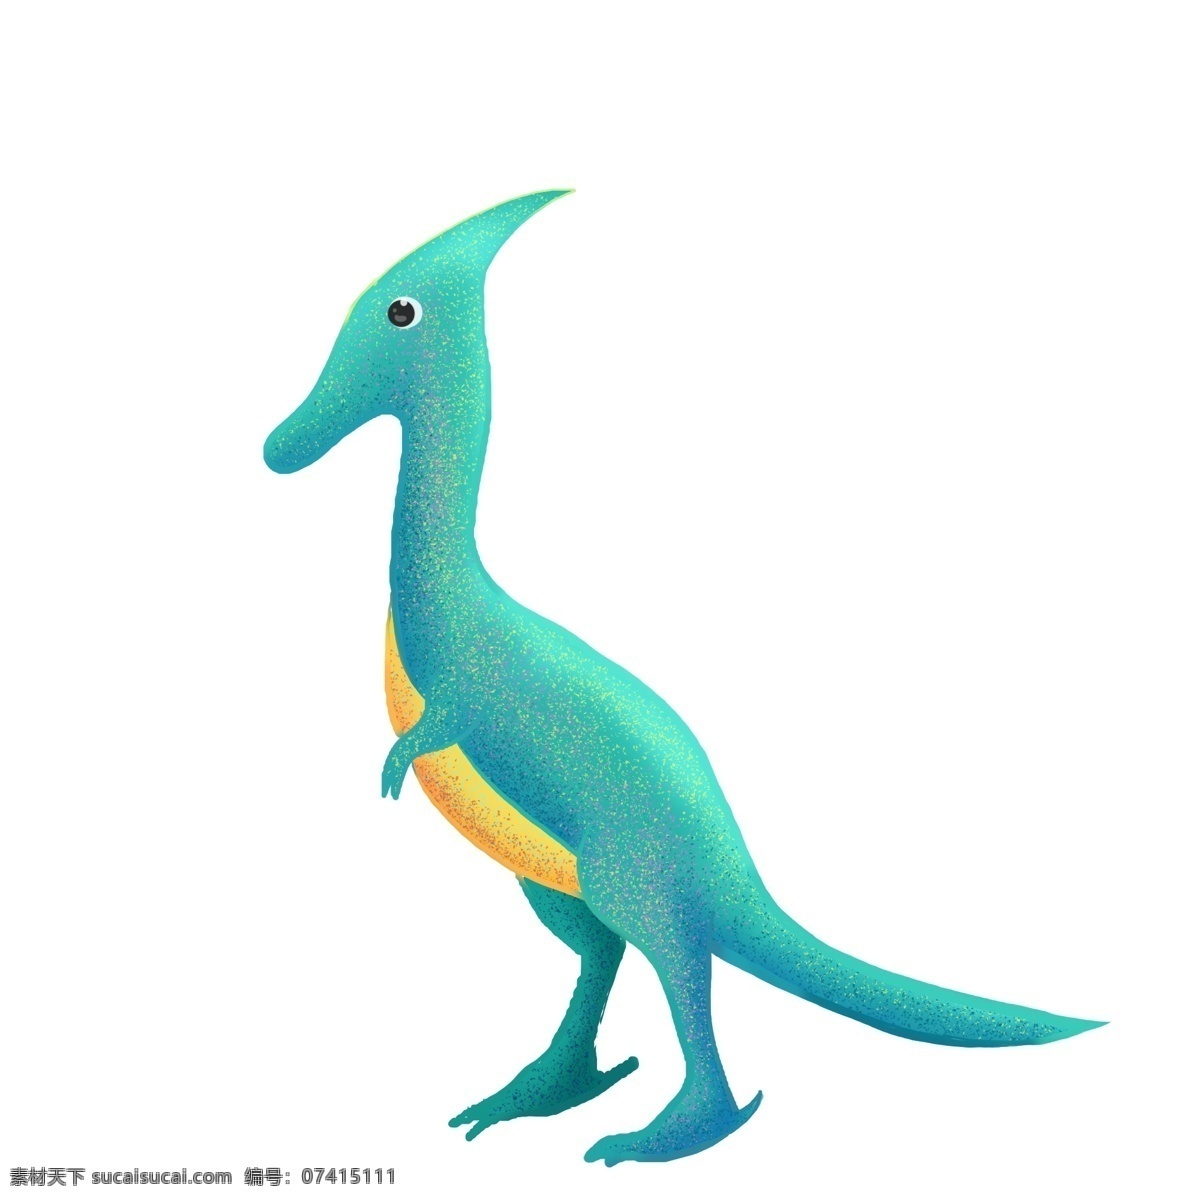 尖头 恐龙 装饰 插画 尖头的恐龙 卡通恐龙 可爱的恐龙 小动物 侏罗纪恐龙 恐龙乐园 站立的恐龙